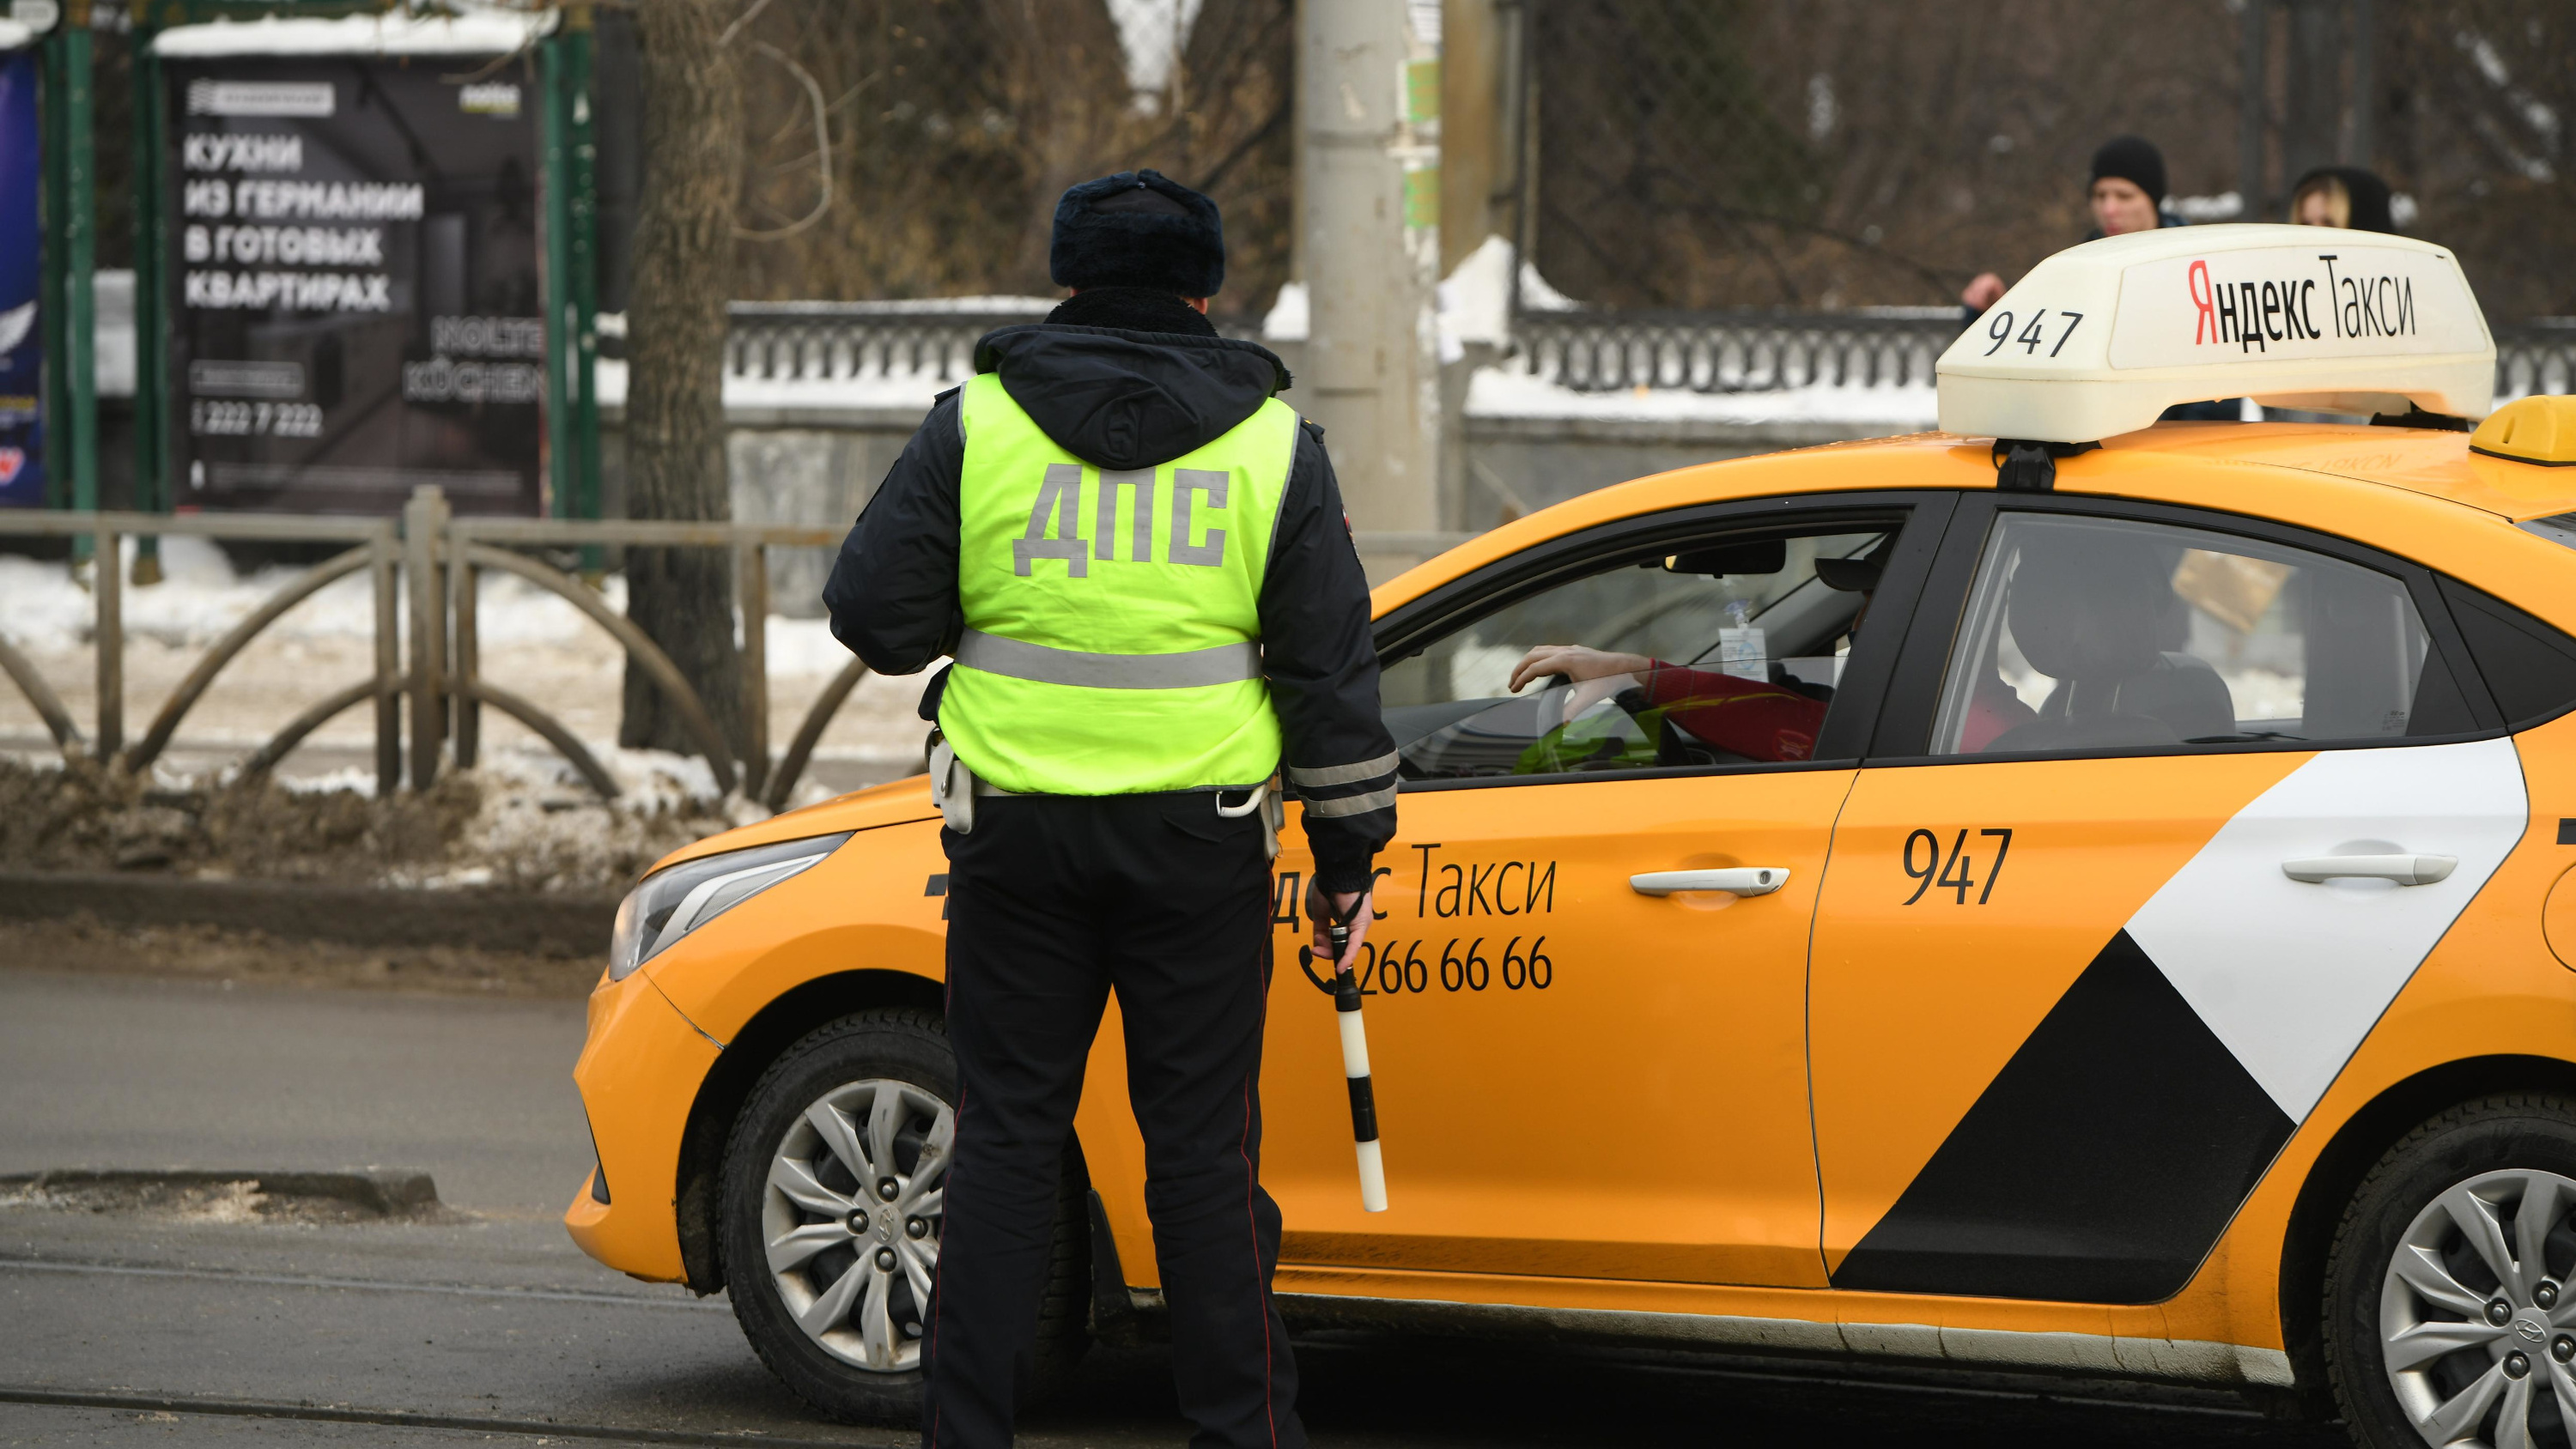 Что нас ждет в марте: уголовников не пустят за руль в такси, а за мусор теперь можно платить меньше